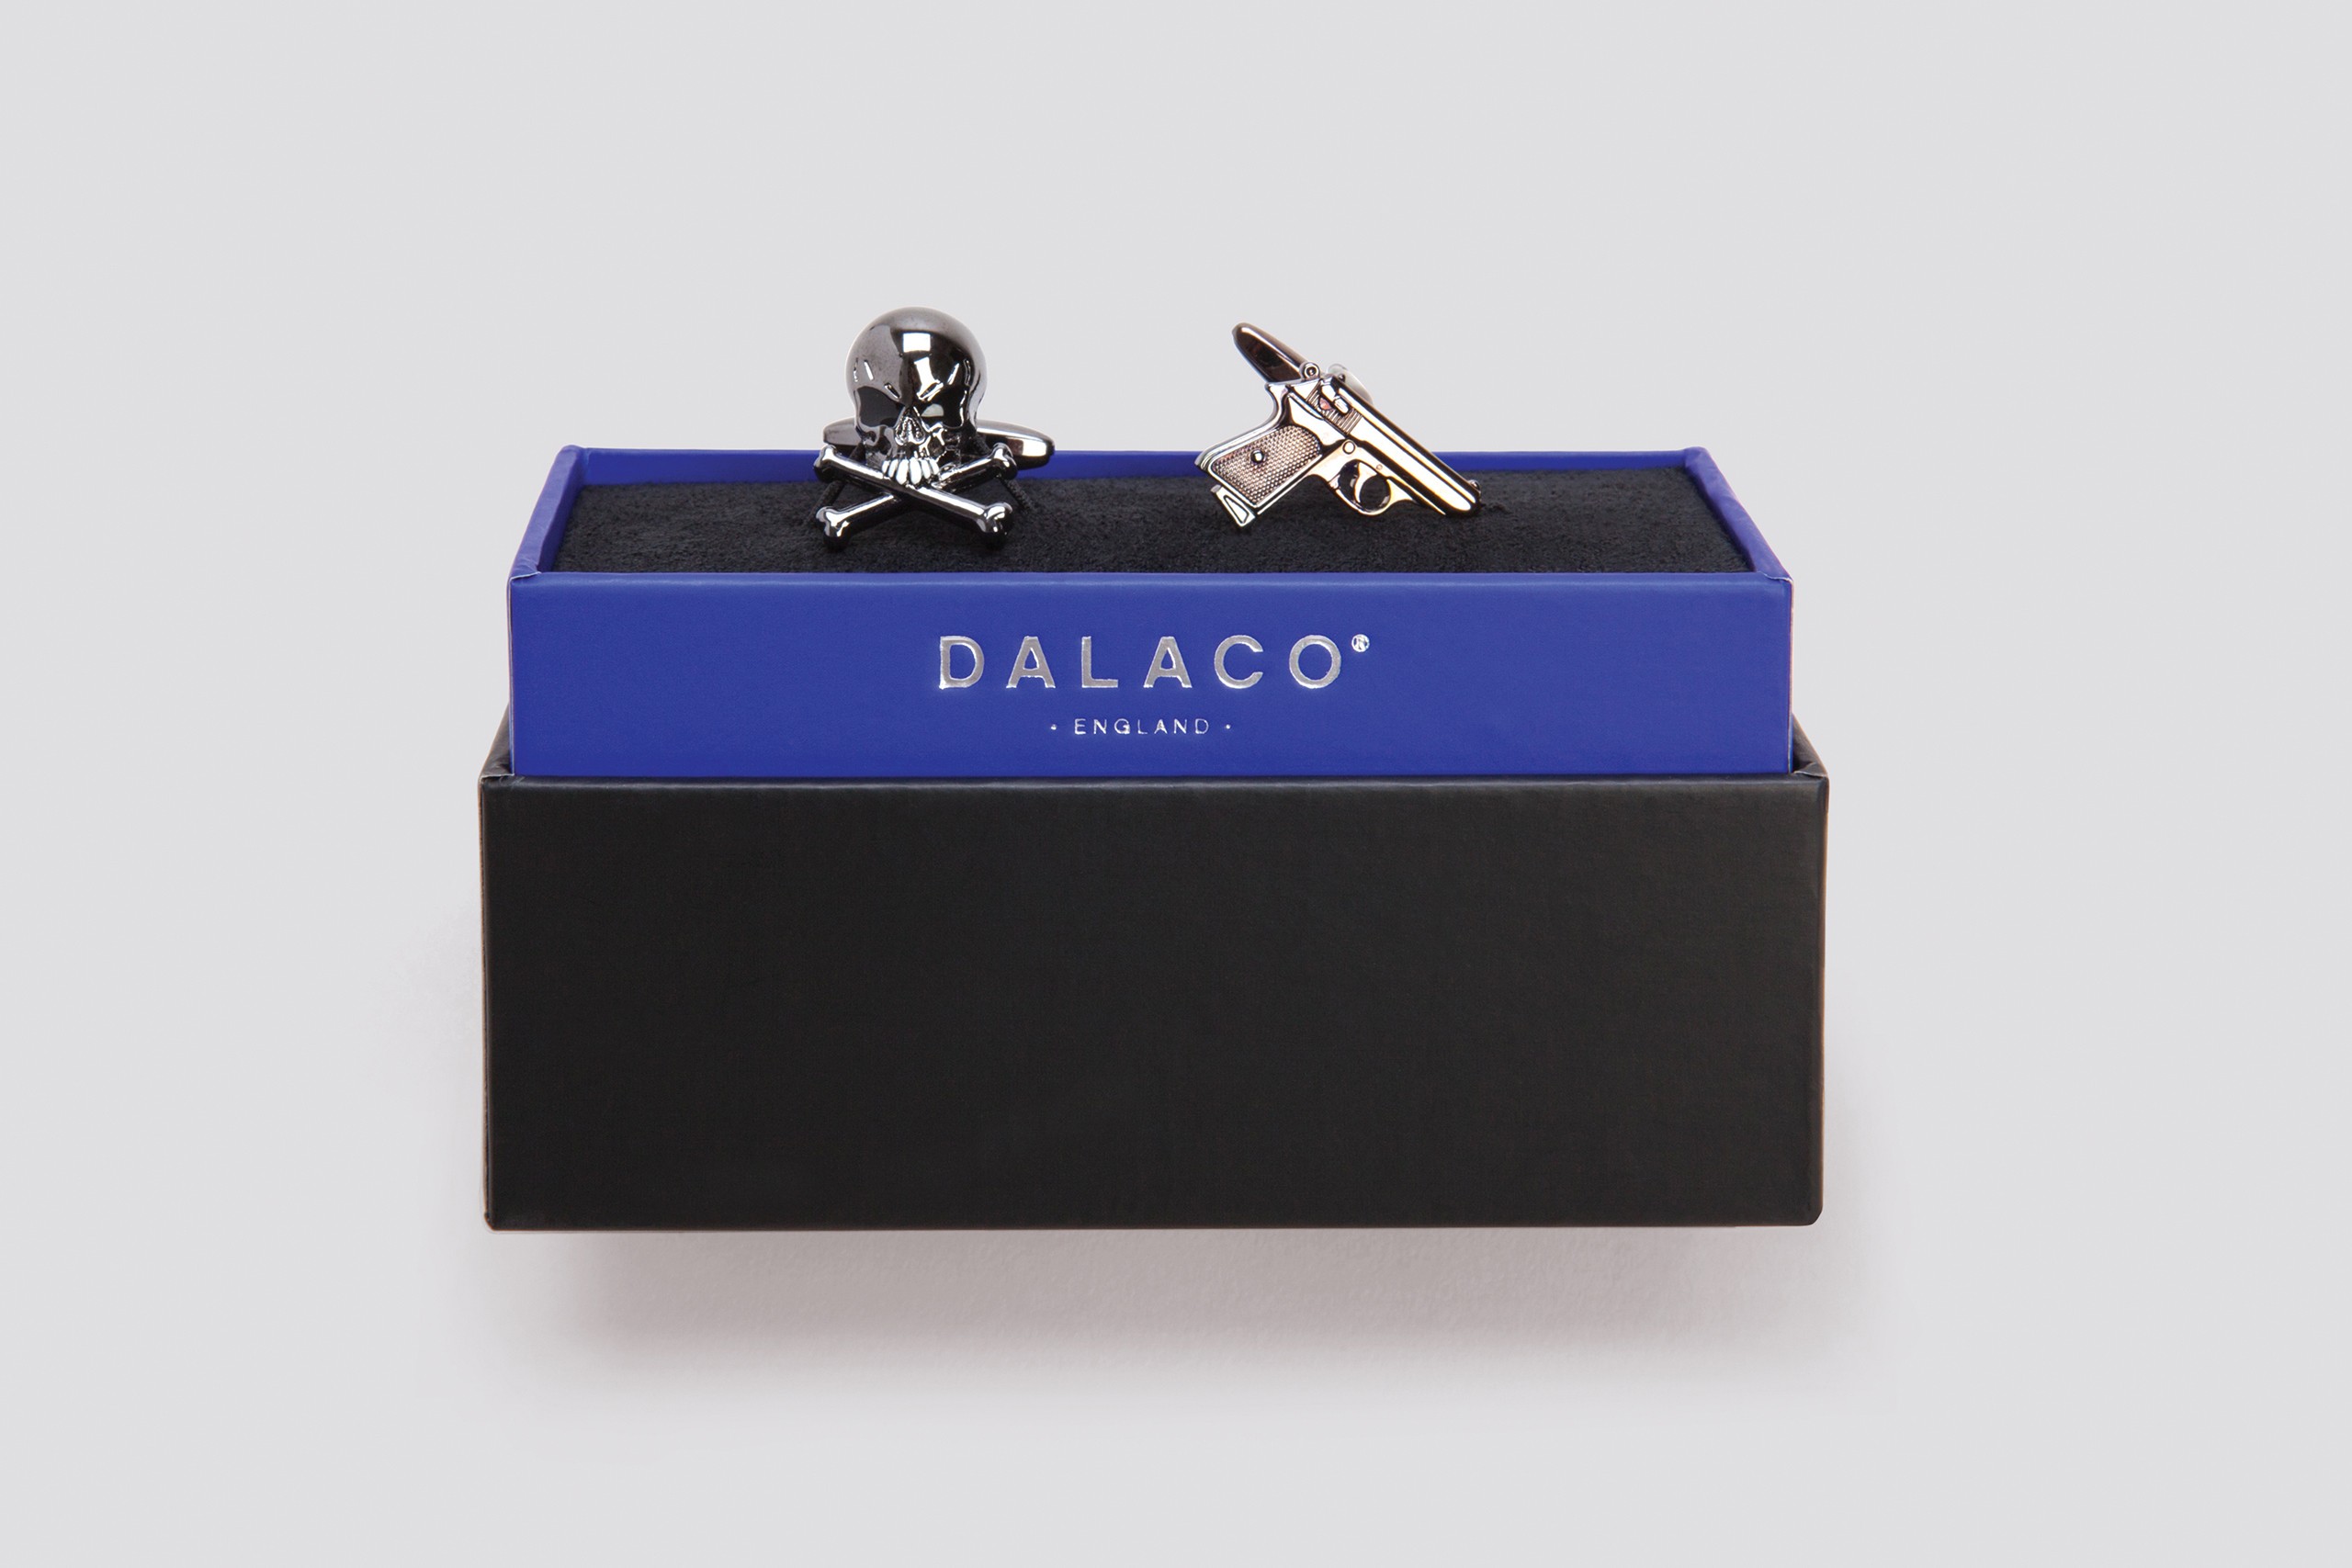 Dalaco - Packaging